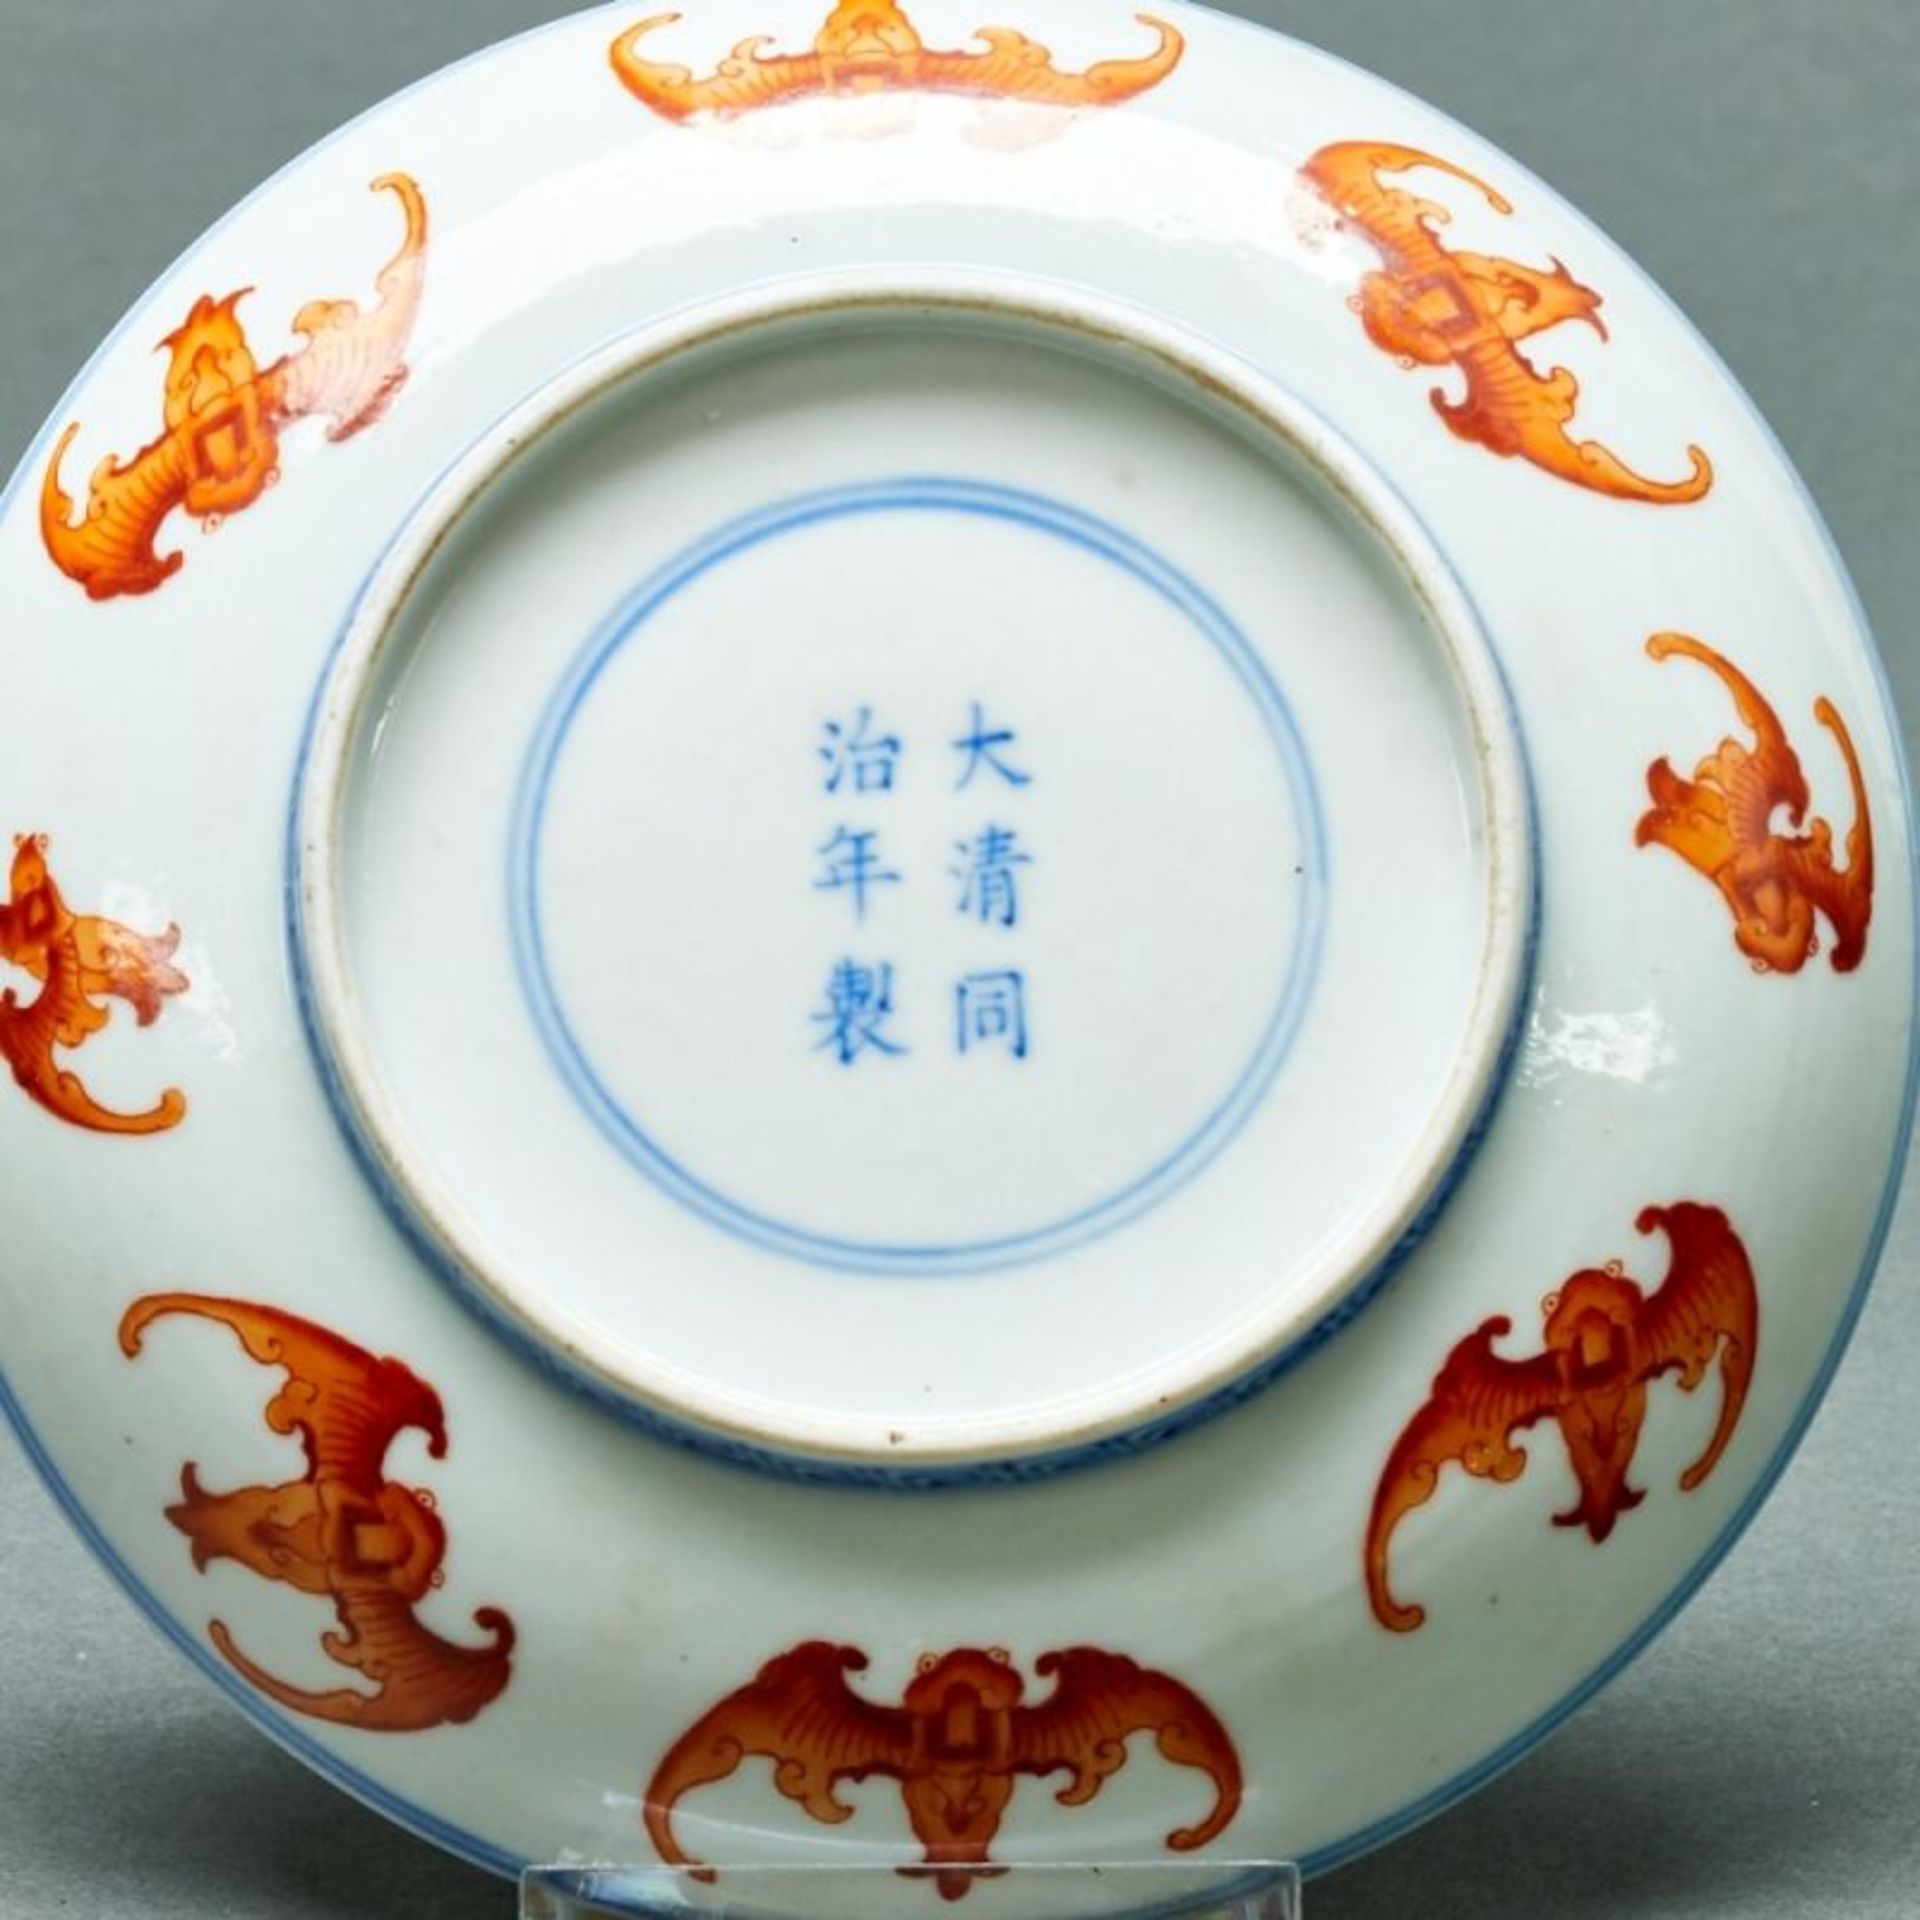 Kleiner Teller mit Fledermausdekor, China - Image 2 of 2